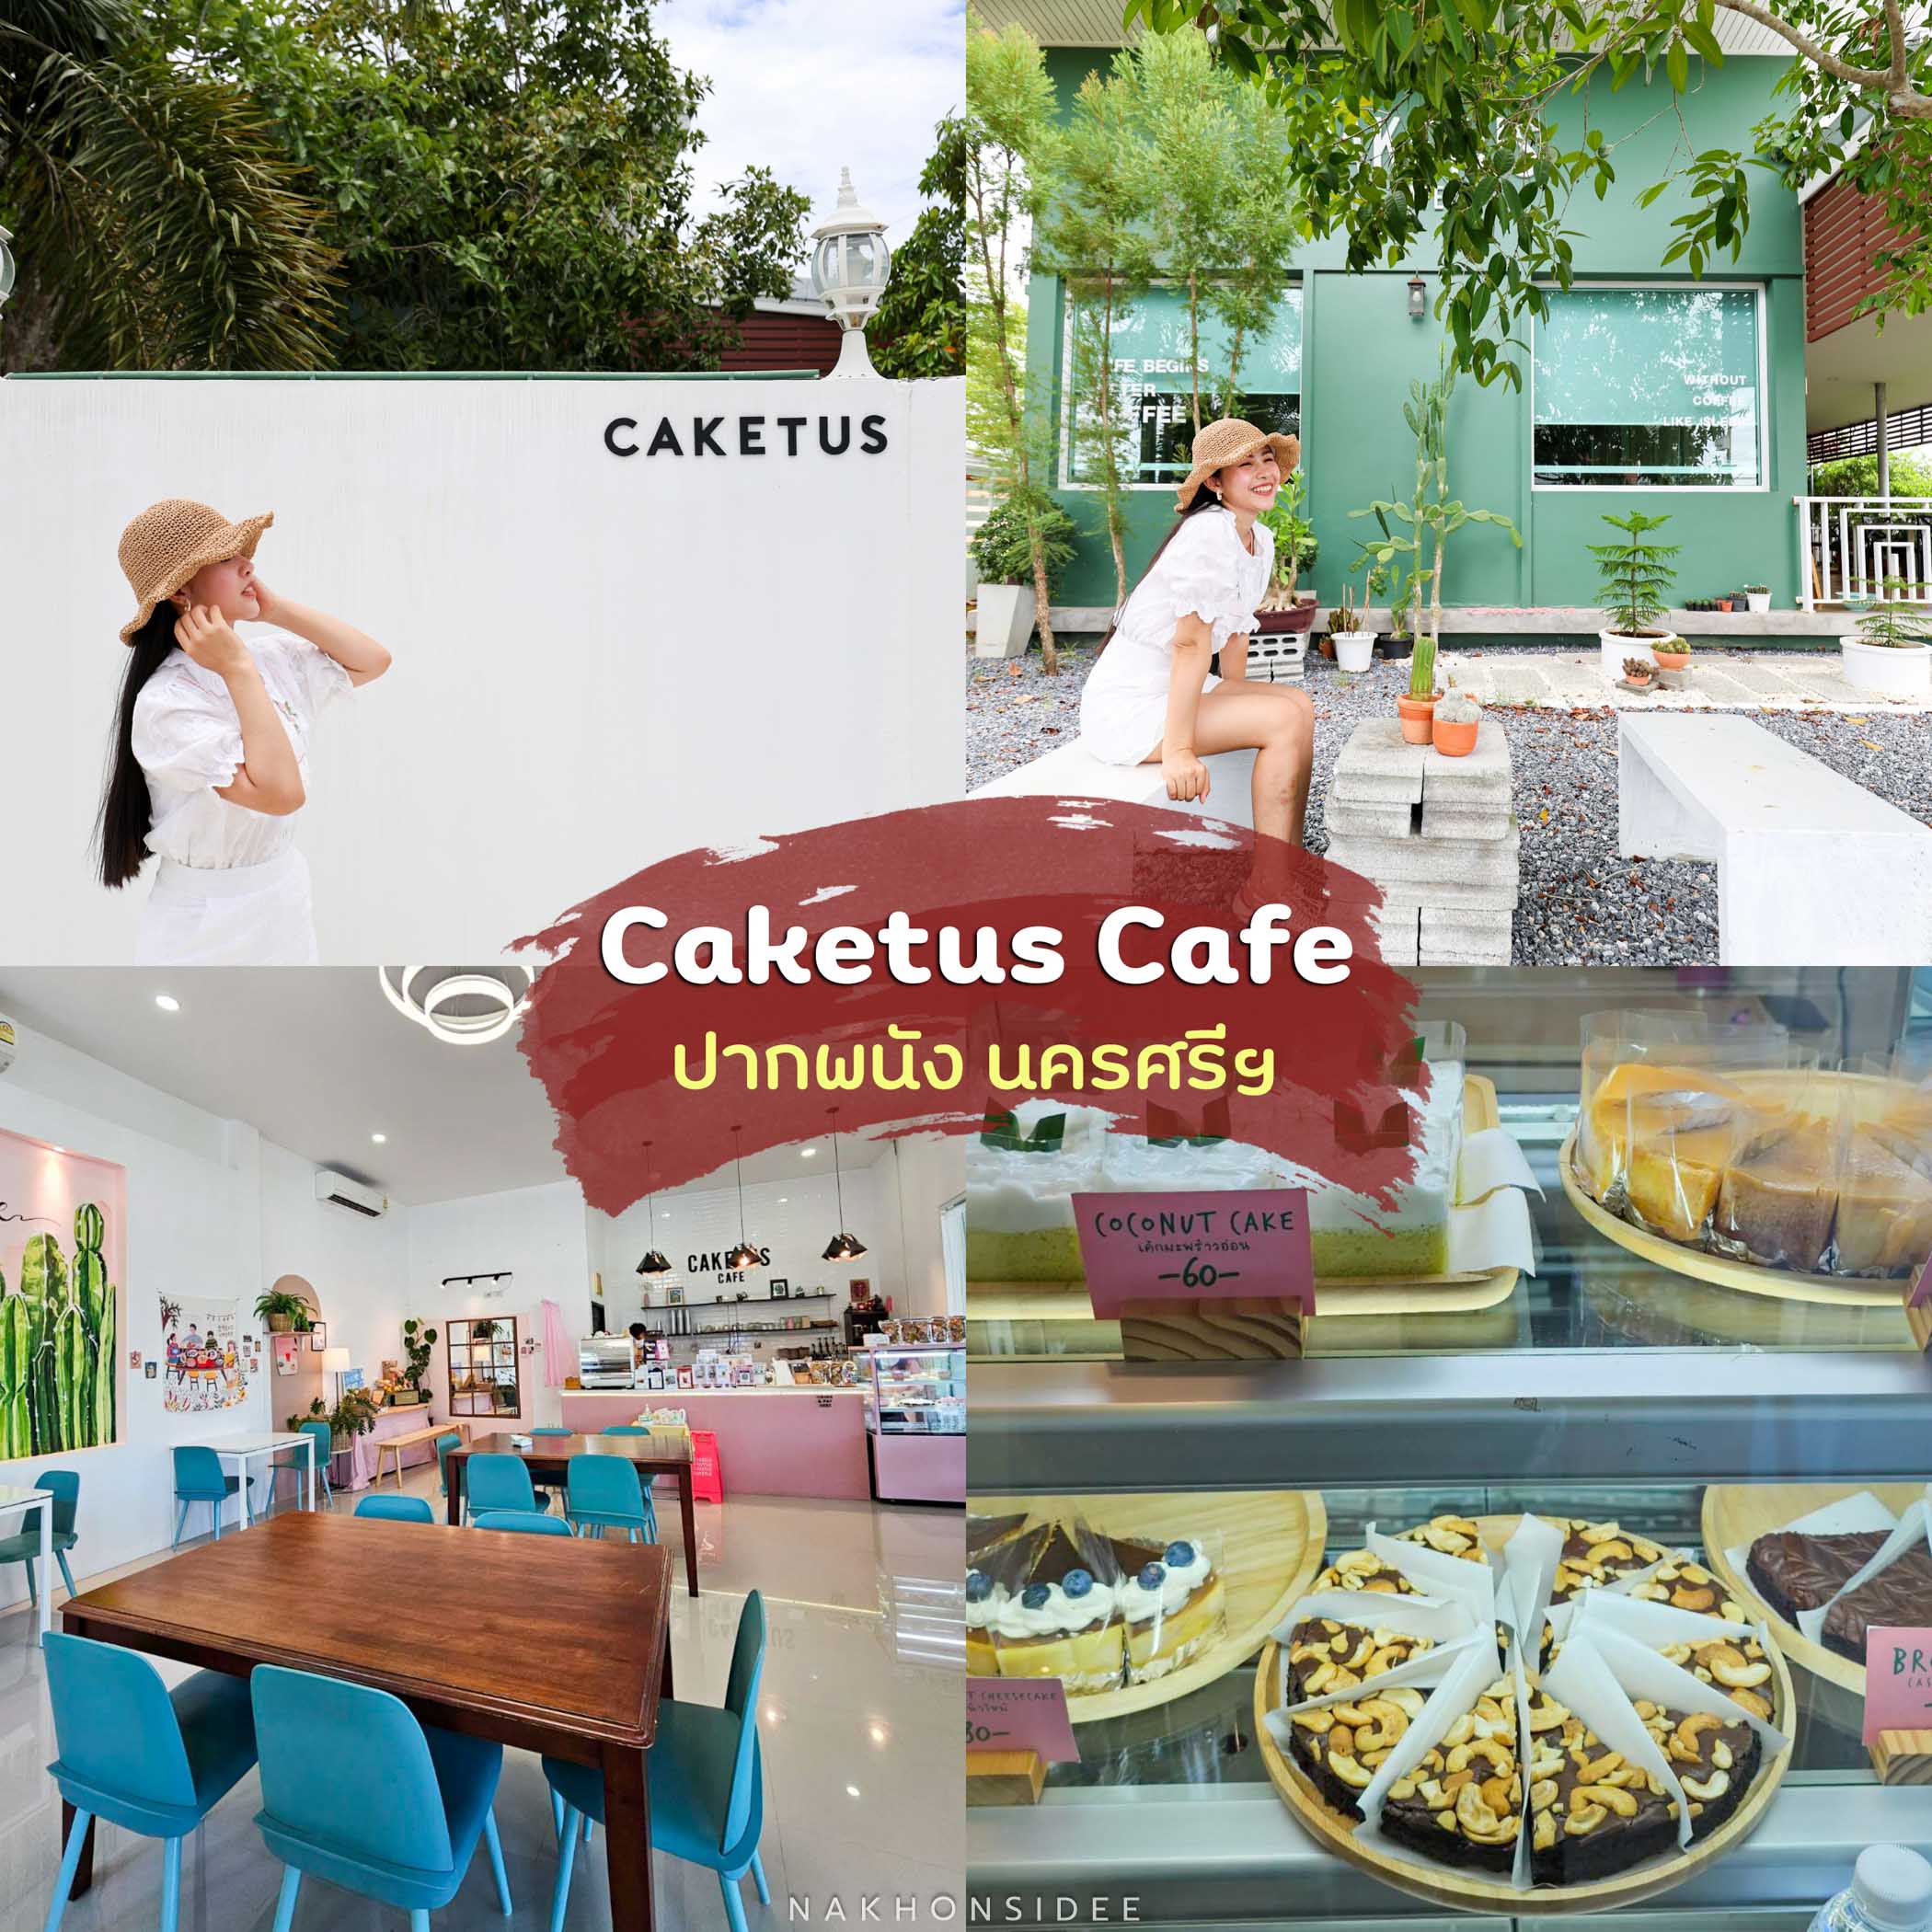 Caketus-Cafe คาเฟ่สไตล์มินิมอลโทนสีขาว-ปกคลุมไปด้วยต้นไม้สีเขียว-ร้านนี้บอกเลยว่าต้องมา-ทีเด็ดเลยที่ต้องห้ามพลาด-คือ-เค้ก-และเบเกอรี่-ตามชื่อร้านนี่เนอะ-เค้กของที่นี่มีให้เลือกมากมายหลายแบบ-แอดชอบหมดเลย-โดยเฉพาะเค้กมัทฉะ-ช็อกโกแลต-บางช่วงจะมีเค้กผลไม้ตามฤดูกาลด้วยน้าา-เช่นมะยงชิด-นอกจากนั้นยังมีเครื่องดื่มมากมาย-อร่อยเลยแหละต้องมาลองน้าา-ปากพนังชิลมาก
 เที่ยวปากพนัง,เกาะไชย,unseen,ปากพนัง,ที่พัก,ธรรมชาติ,ทะเล